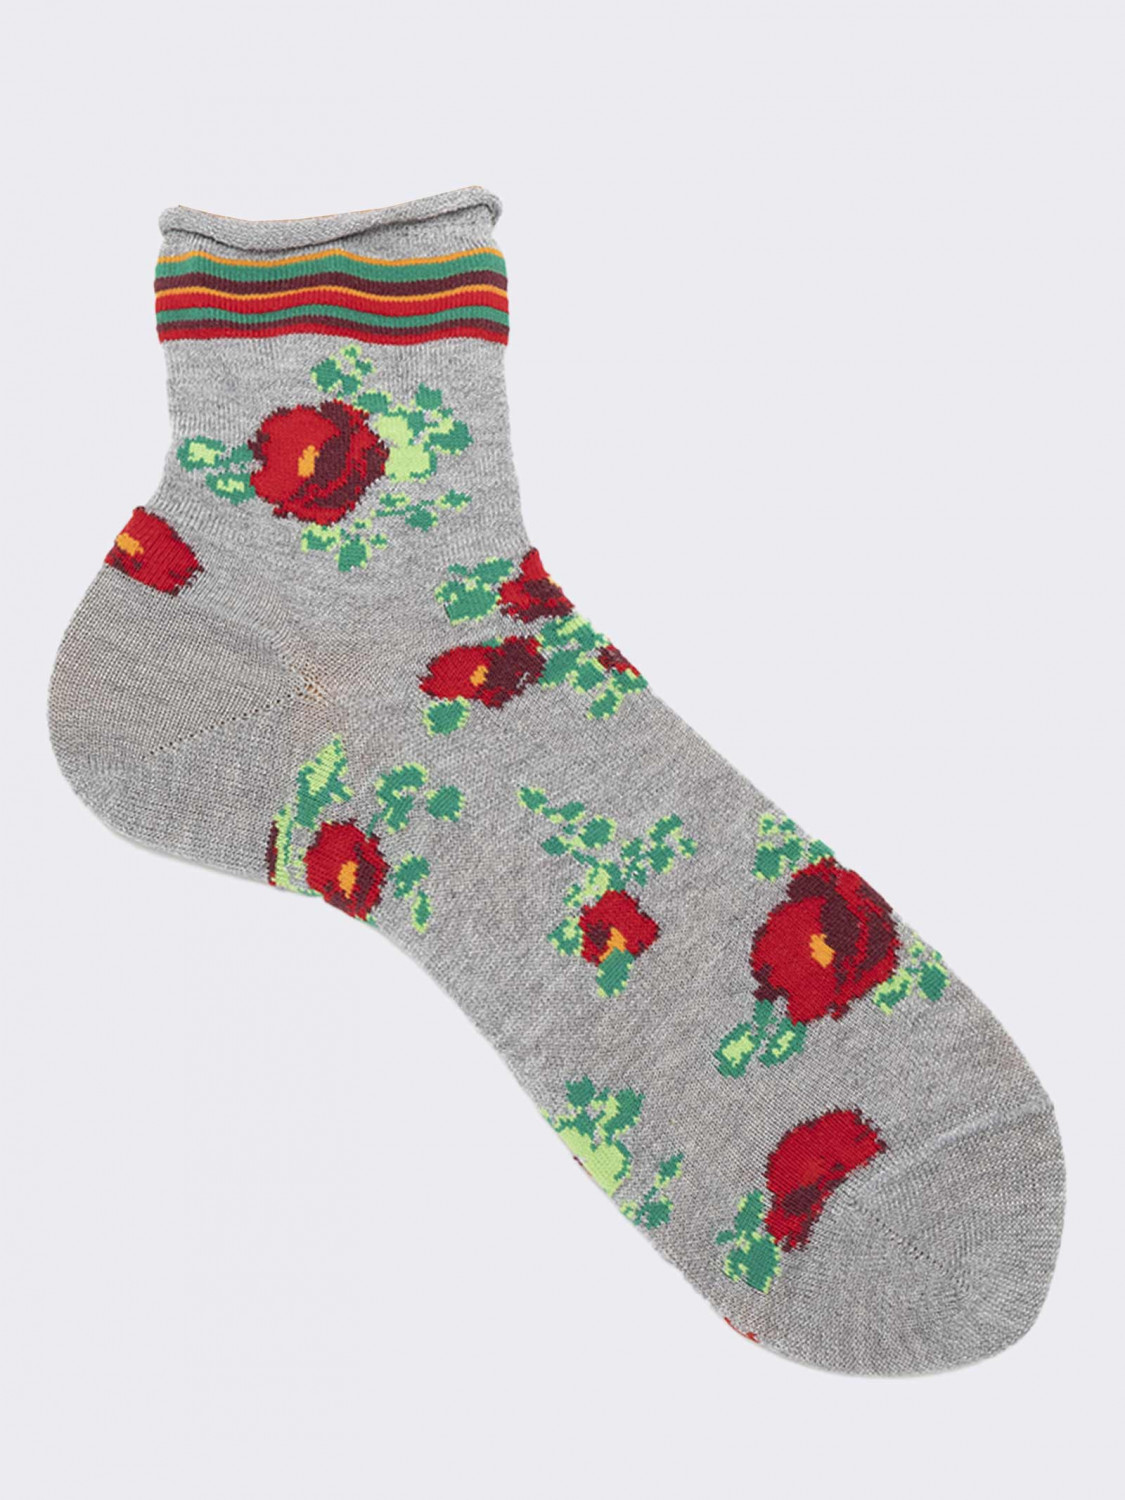 Women's short cotton rose patterned socks